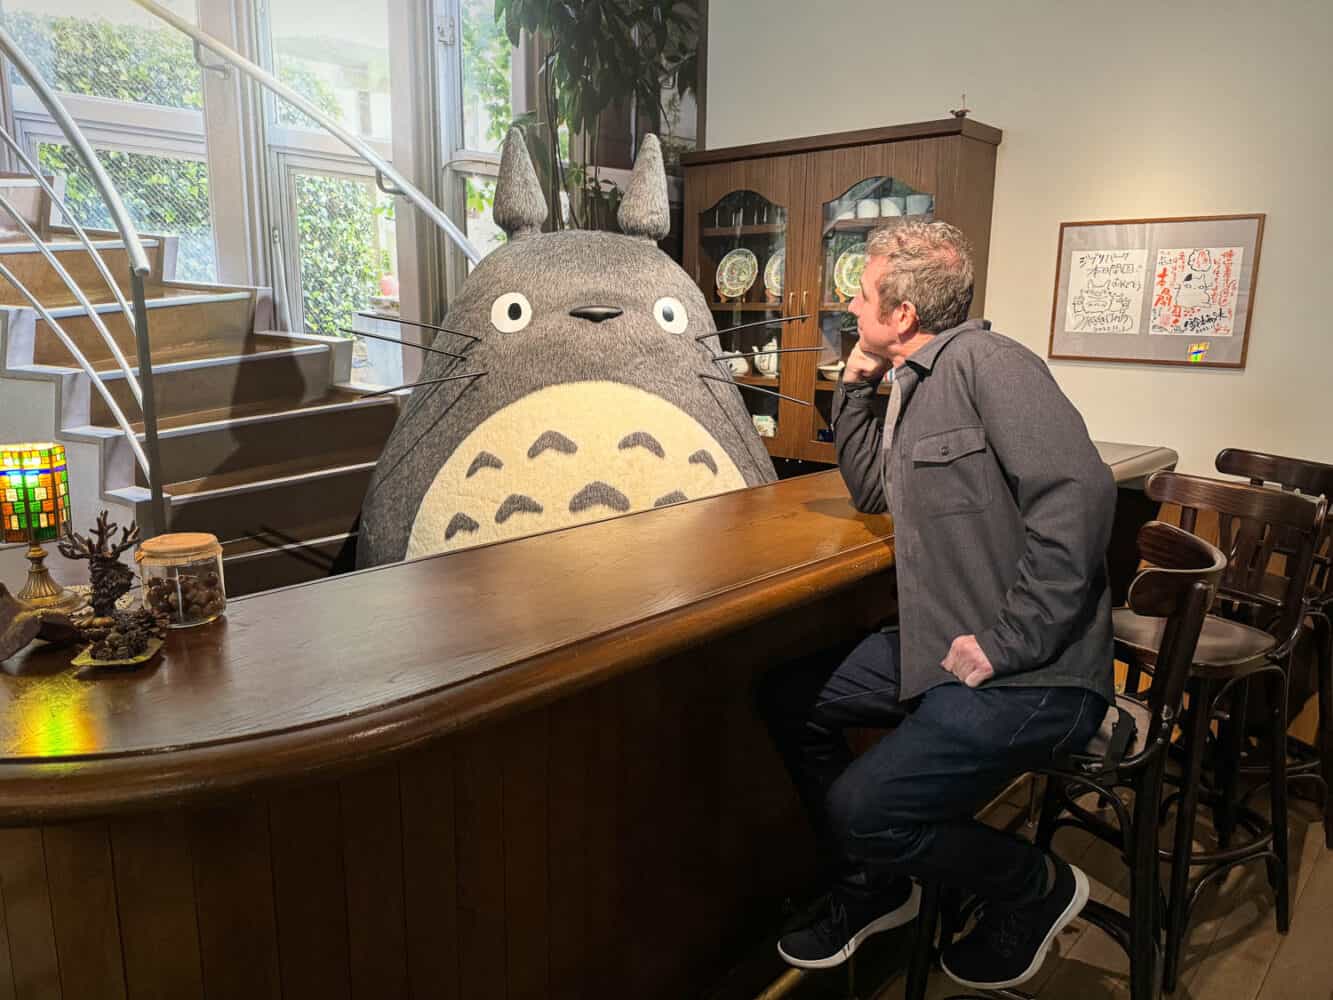 Simon meeting Totoro at Ghibli Park in Japan